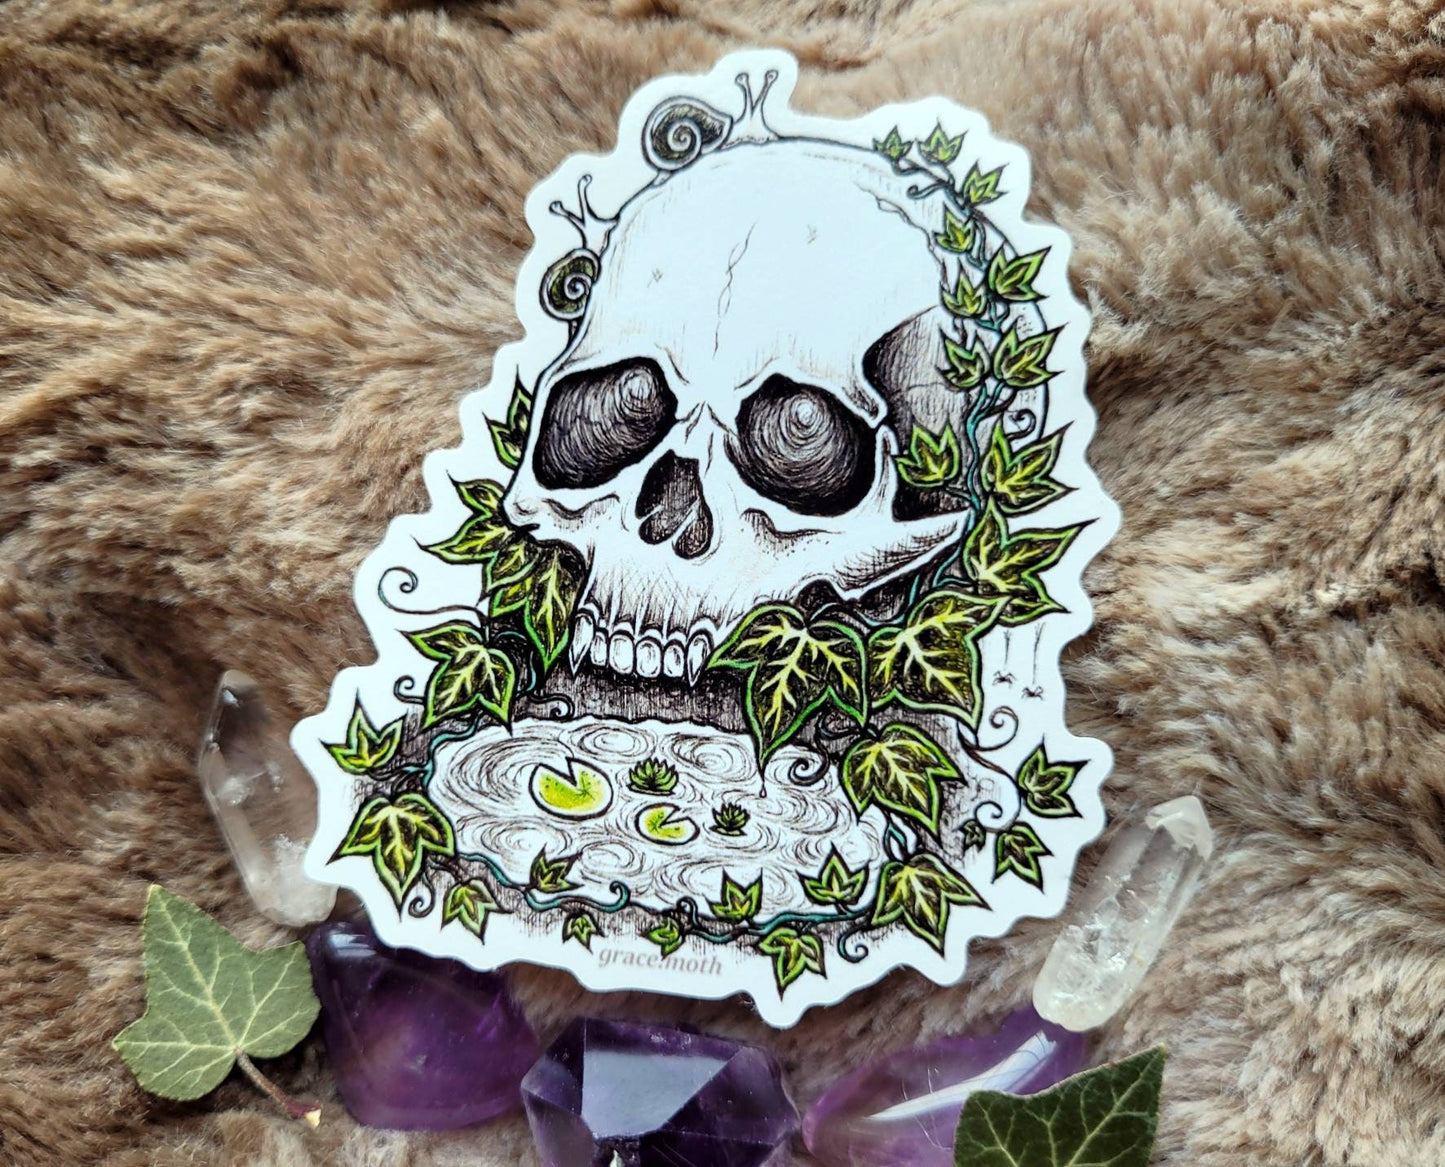 Ivy Skull - Vinyl Sticker 10cm by 8cm Illustrated by Grace moth. Gothic art, creepy, fantasy